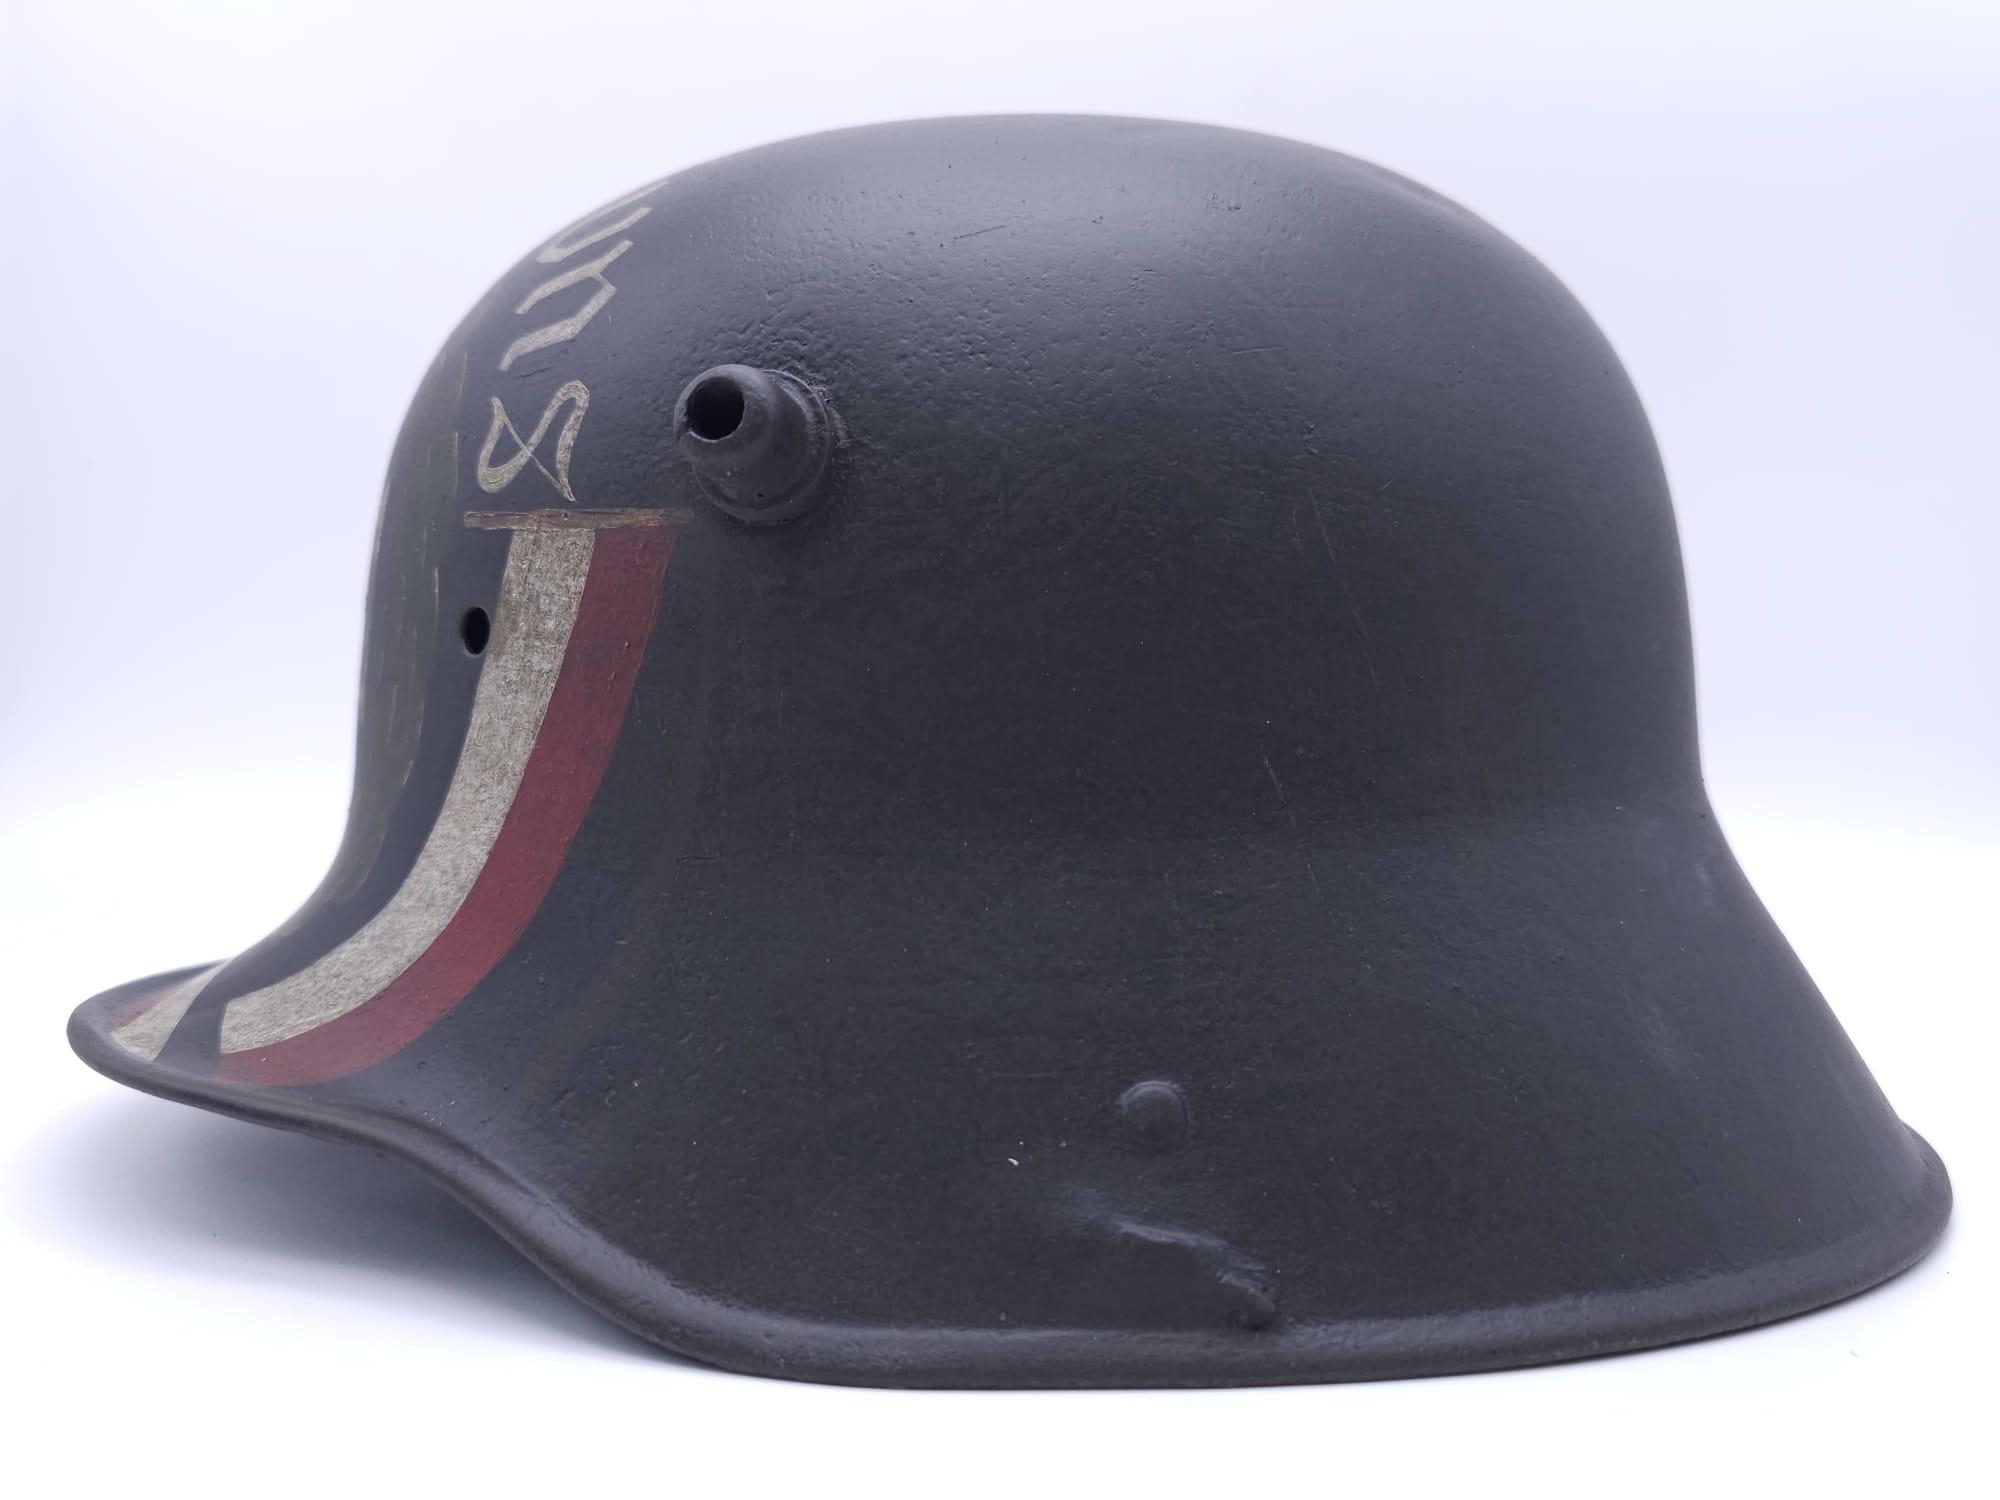 WW1 German Memorial Helmet. Original WW1 German Stahlhelm helmet with post ..War memorial painting. - Image 4 of 7